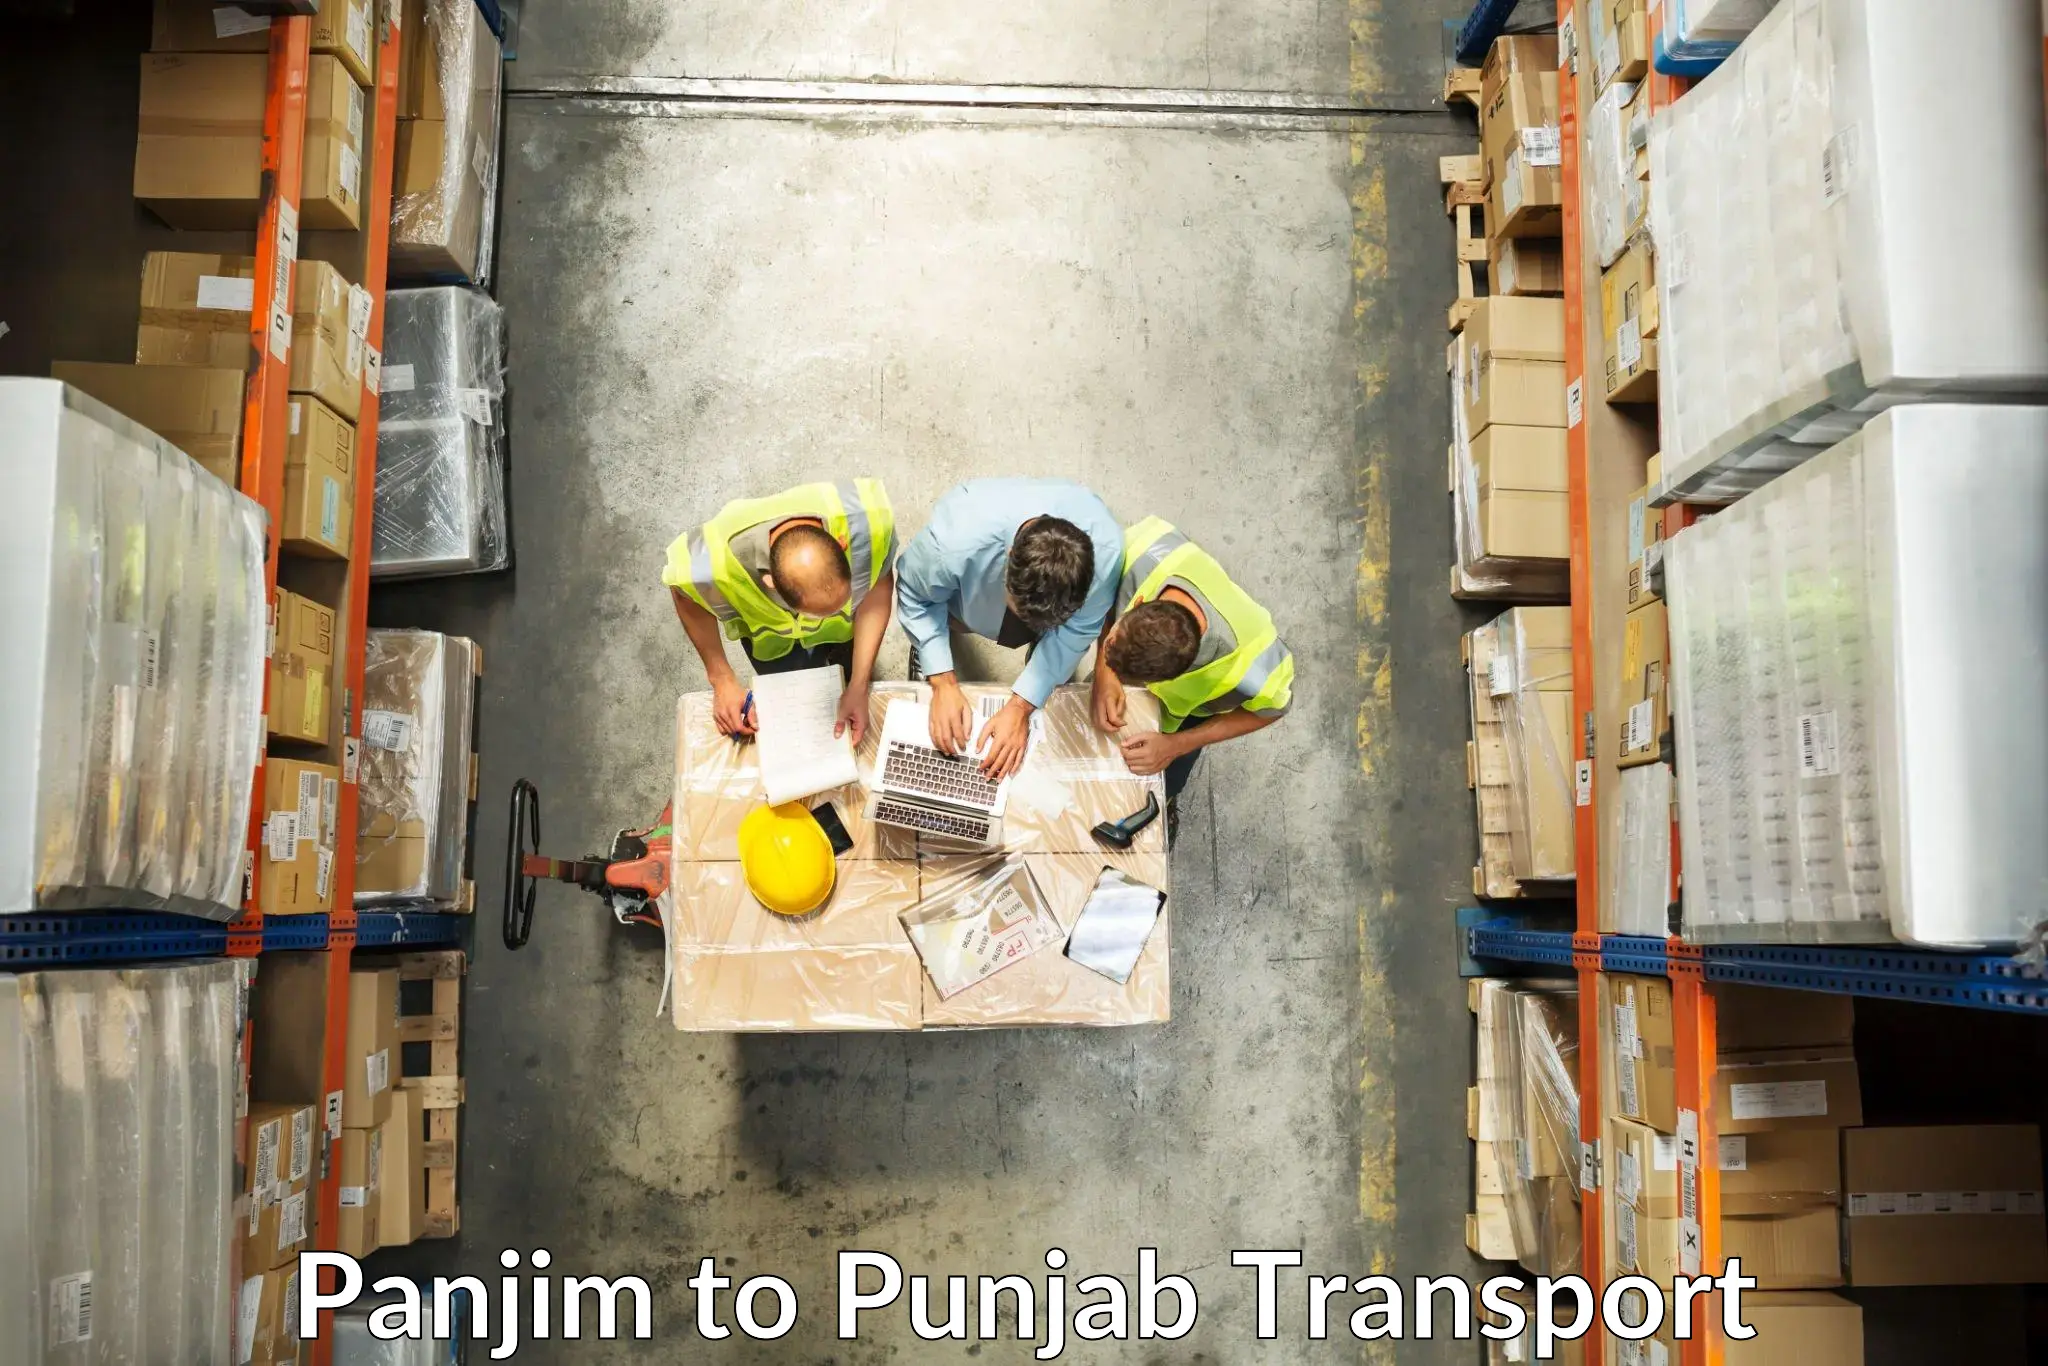 Cargo train transport services Panjim to Punjab